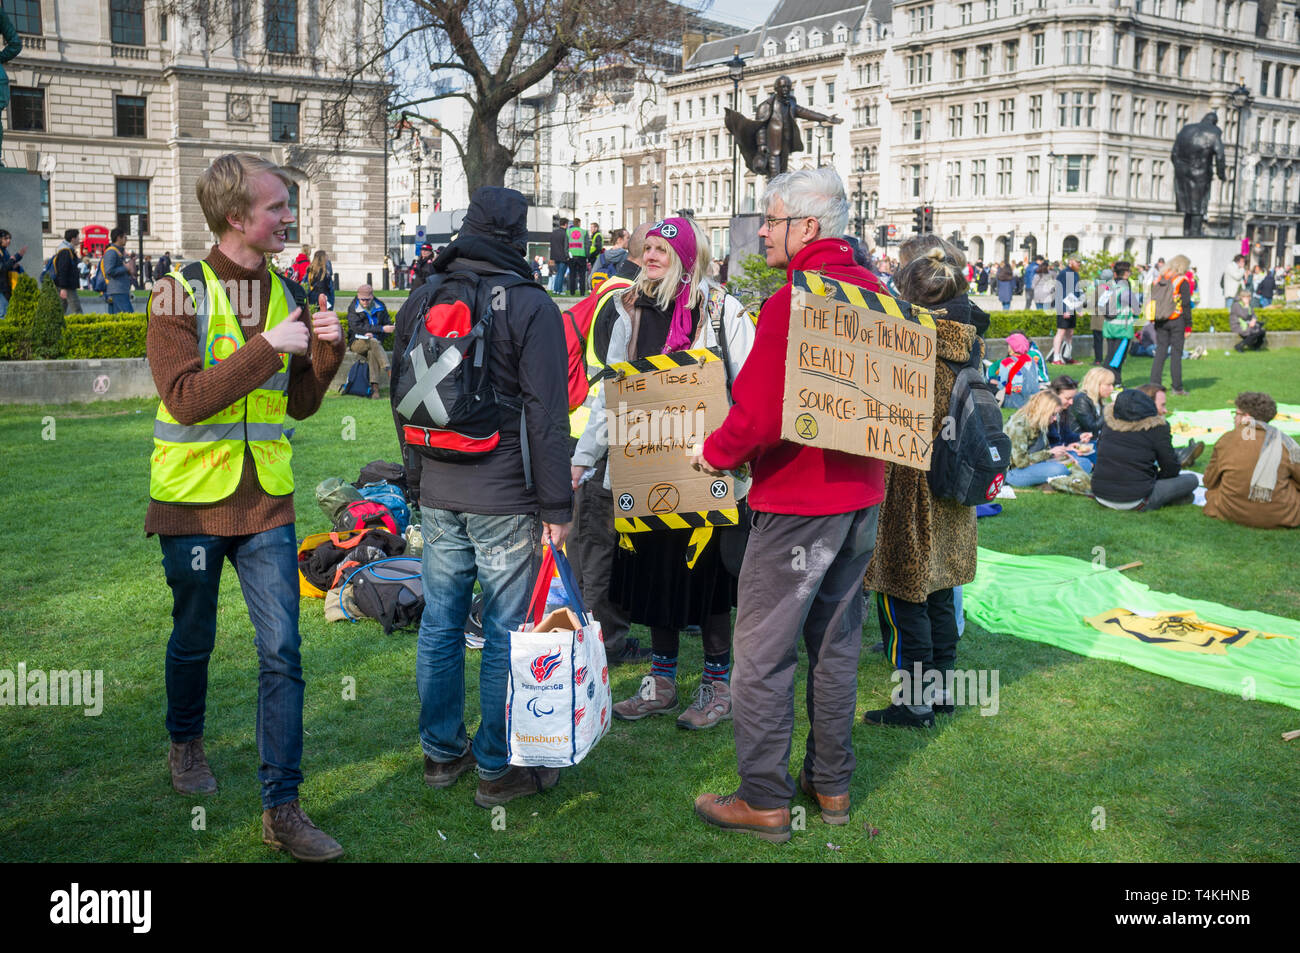 Les manifestants avec des bannières se rassemblent sur le Parlement de Westminster, vert pour la démonstration de la rébellion d'Extinction Banque D'Images